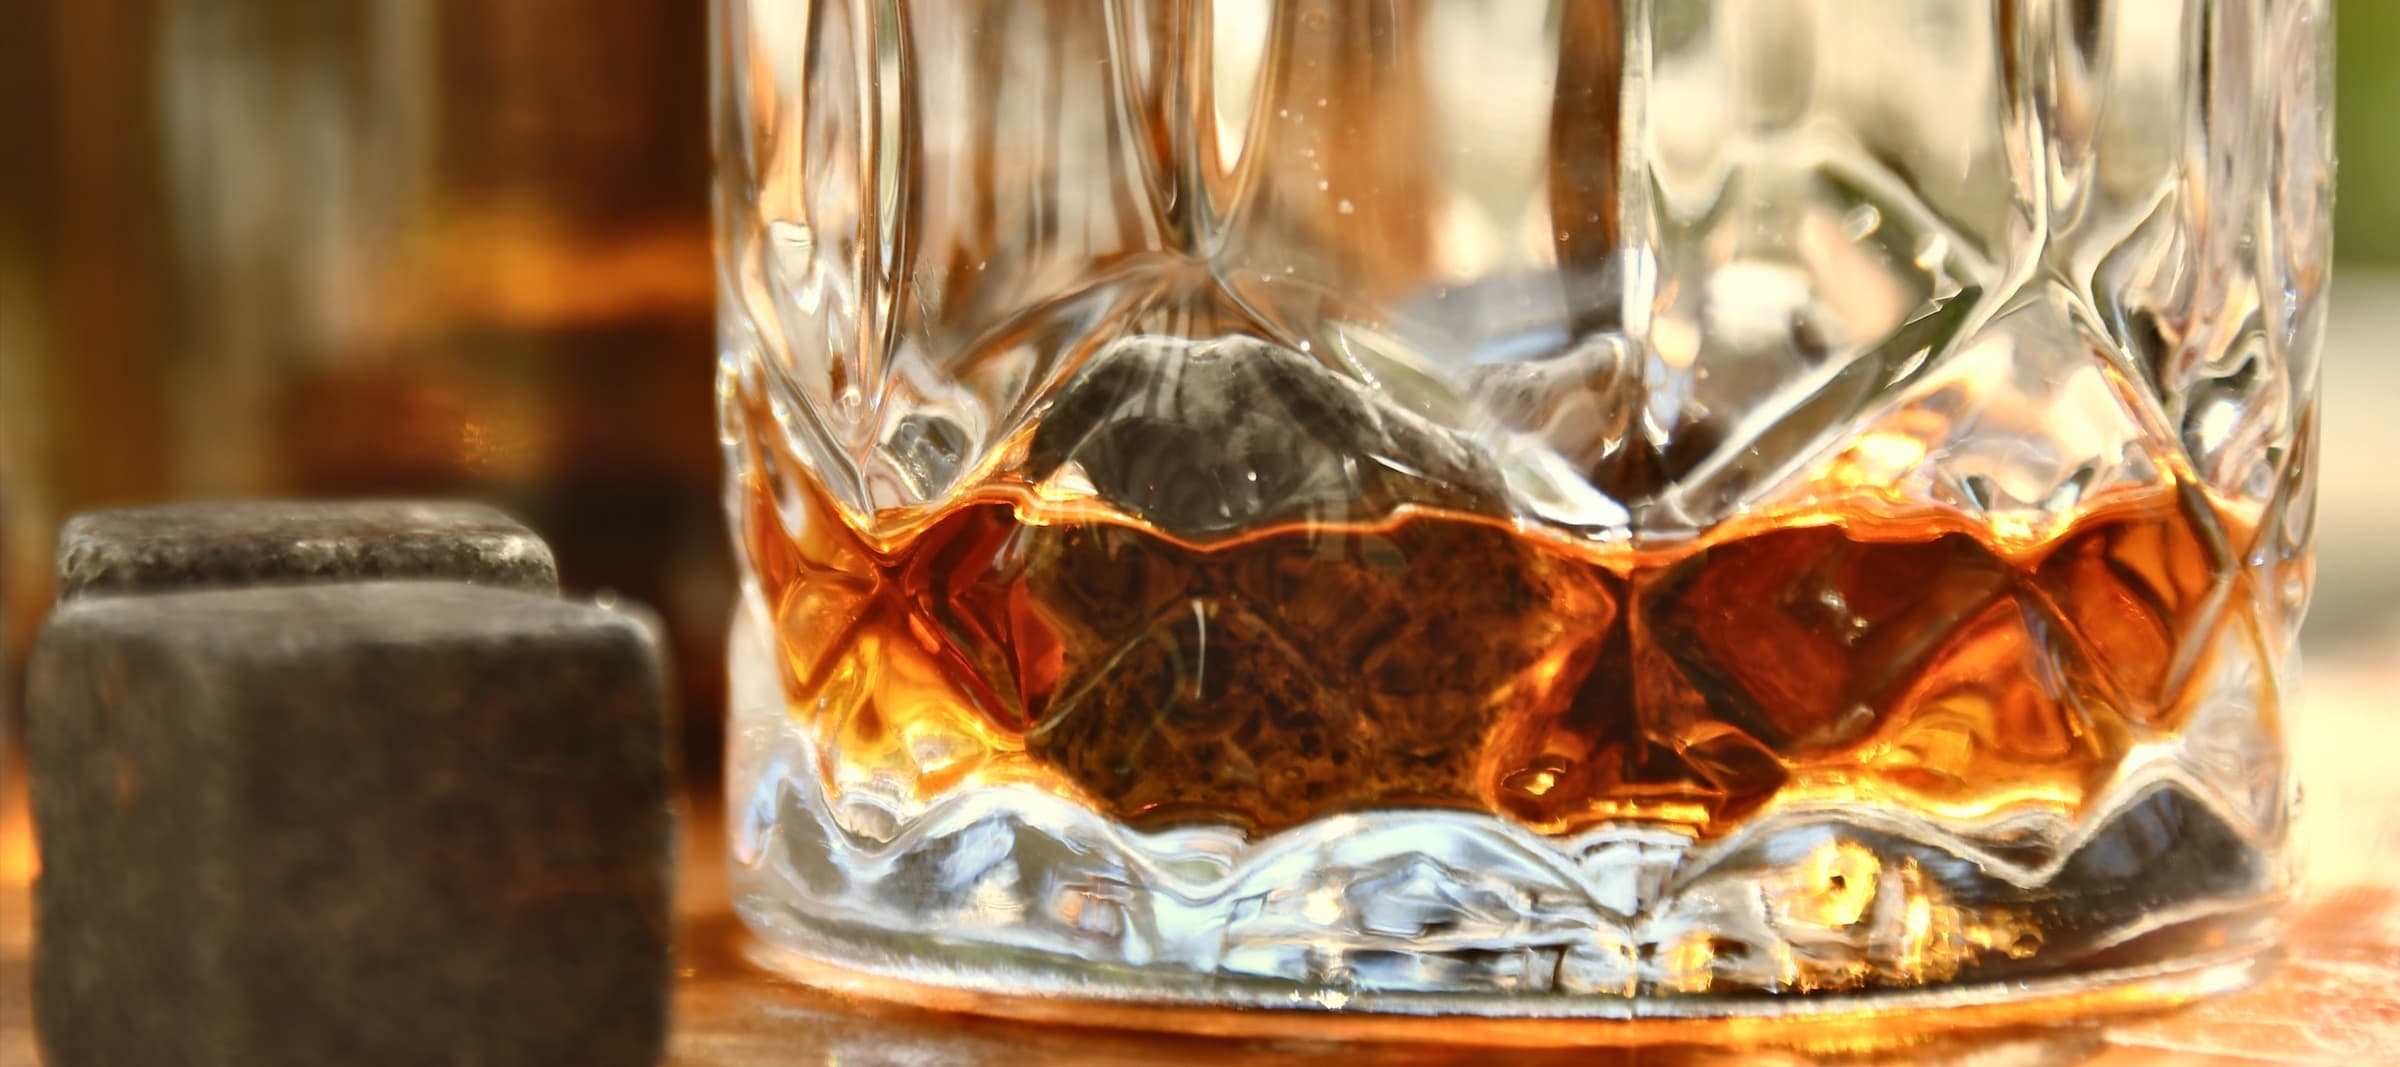 Фото новости: "Производители алкоголя предупредили торговые сети о росте цен"